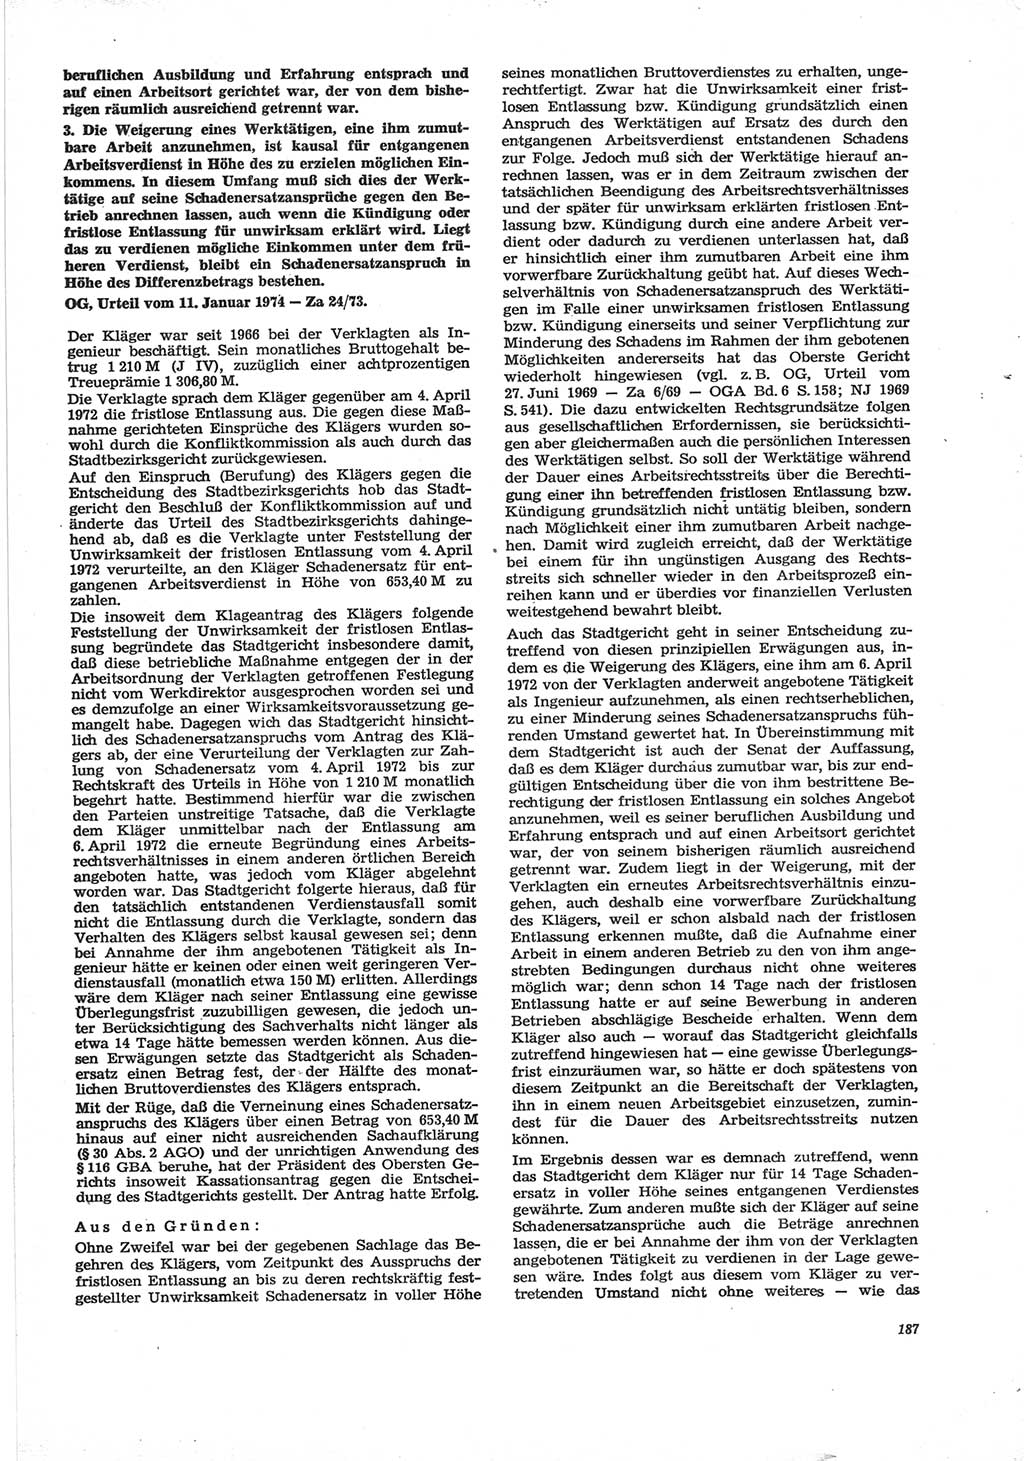 Neue Justiz (NJ), Zeitschrift für Recht und Rechtswissenschaft [Deutsche Demokratische Republik (DDR)], 28. Jahrgang 1974, Seite 187 (NJ DDR 1974, S. 187)